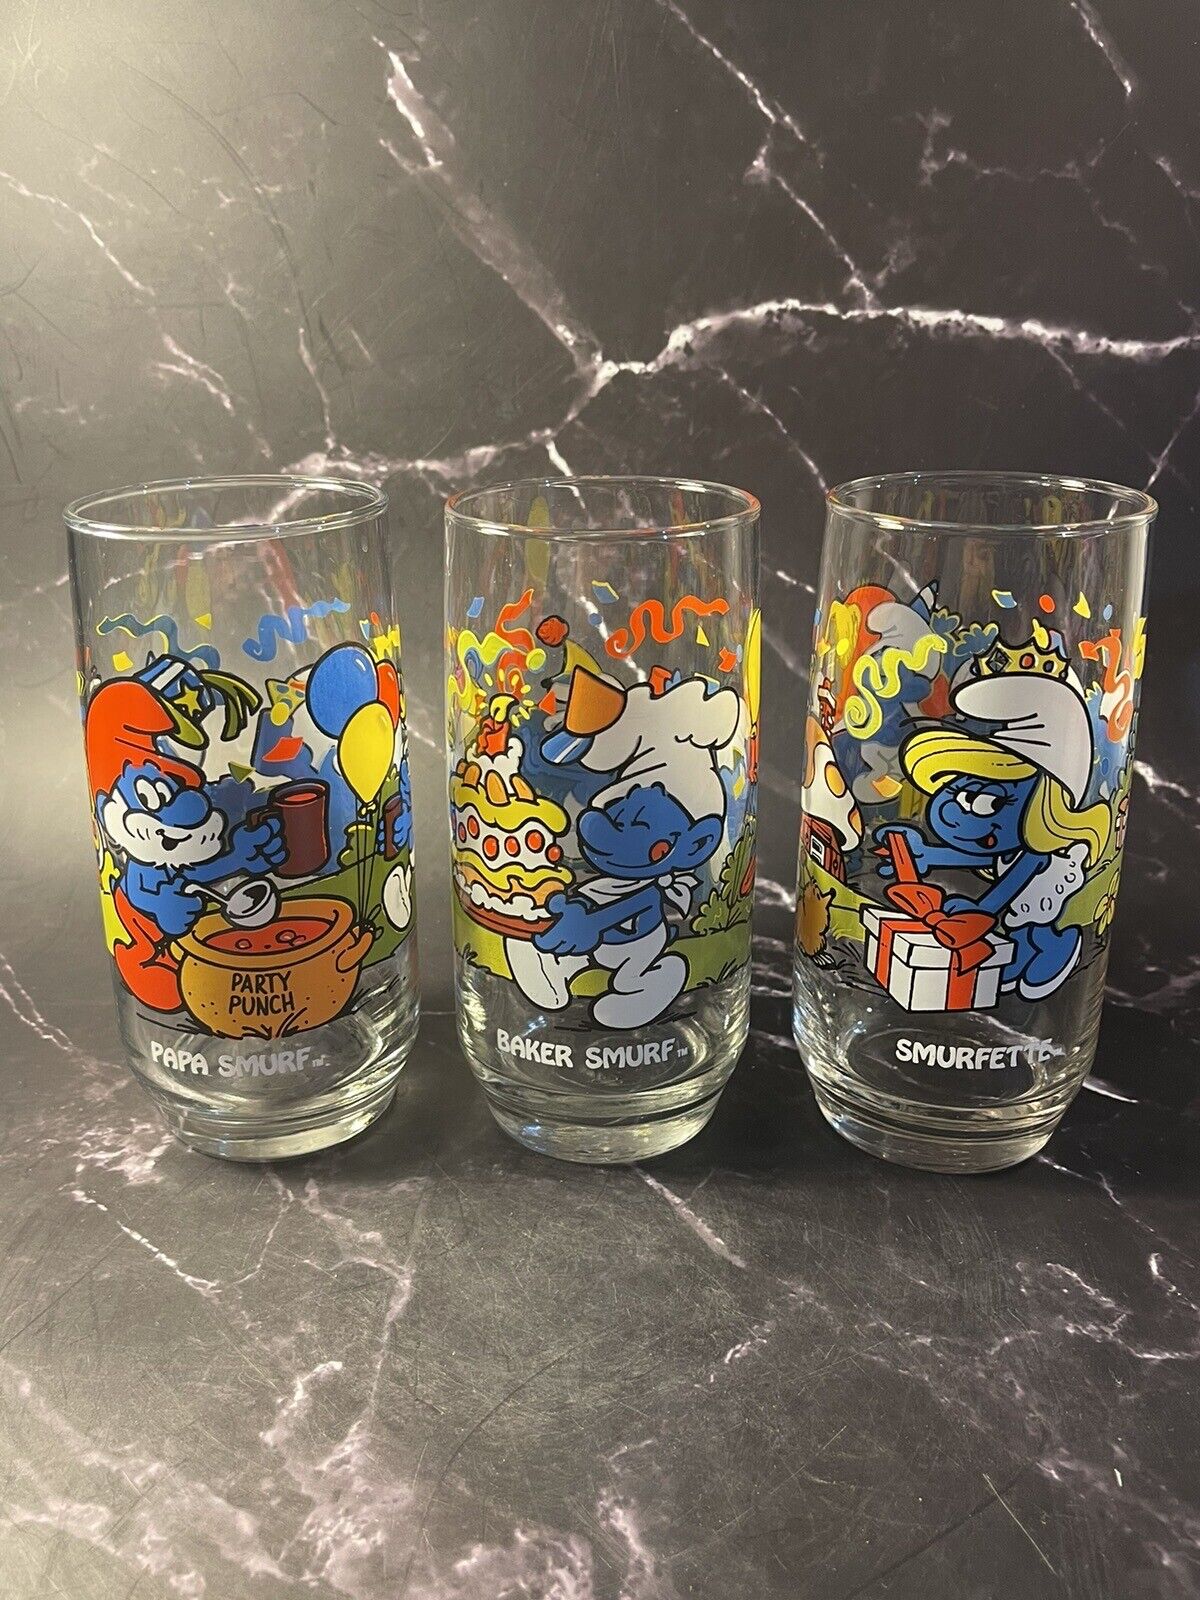 1983 Hardees Smurf Glasses Set of 3 Papa Smurf, Smurfette, Baker Smurf Peyo